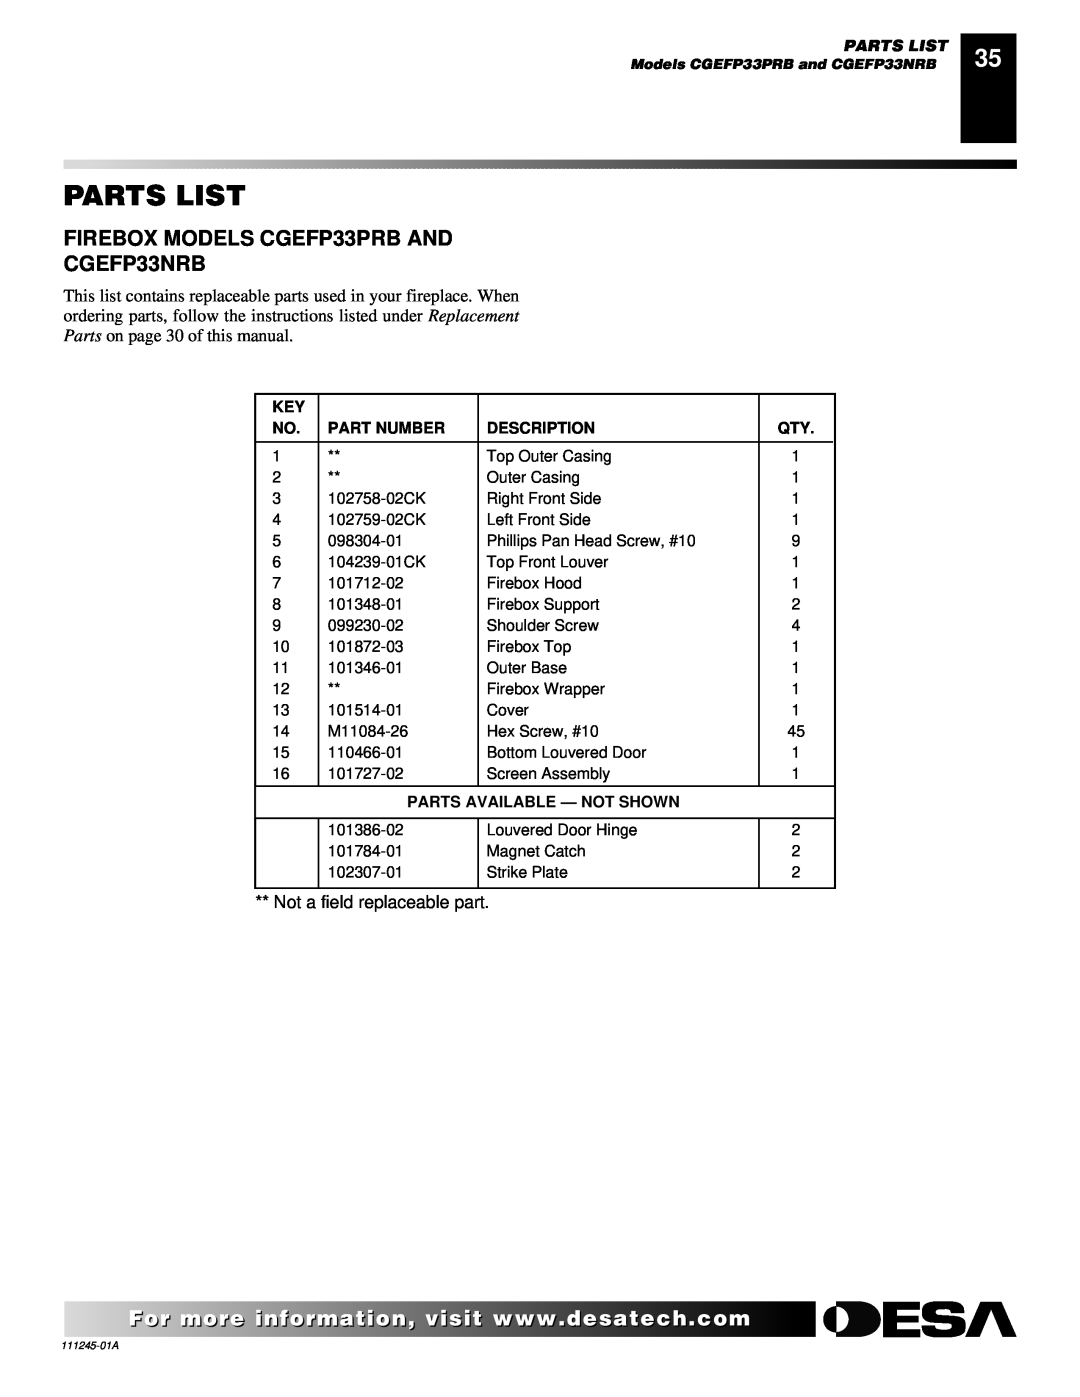 Desa CGEFP33NRB Parts List, Not a field replaceable part, Part Number, Description, Parts Available - Not Shown 